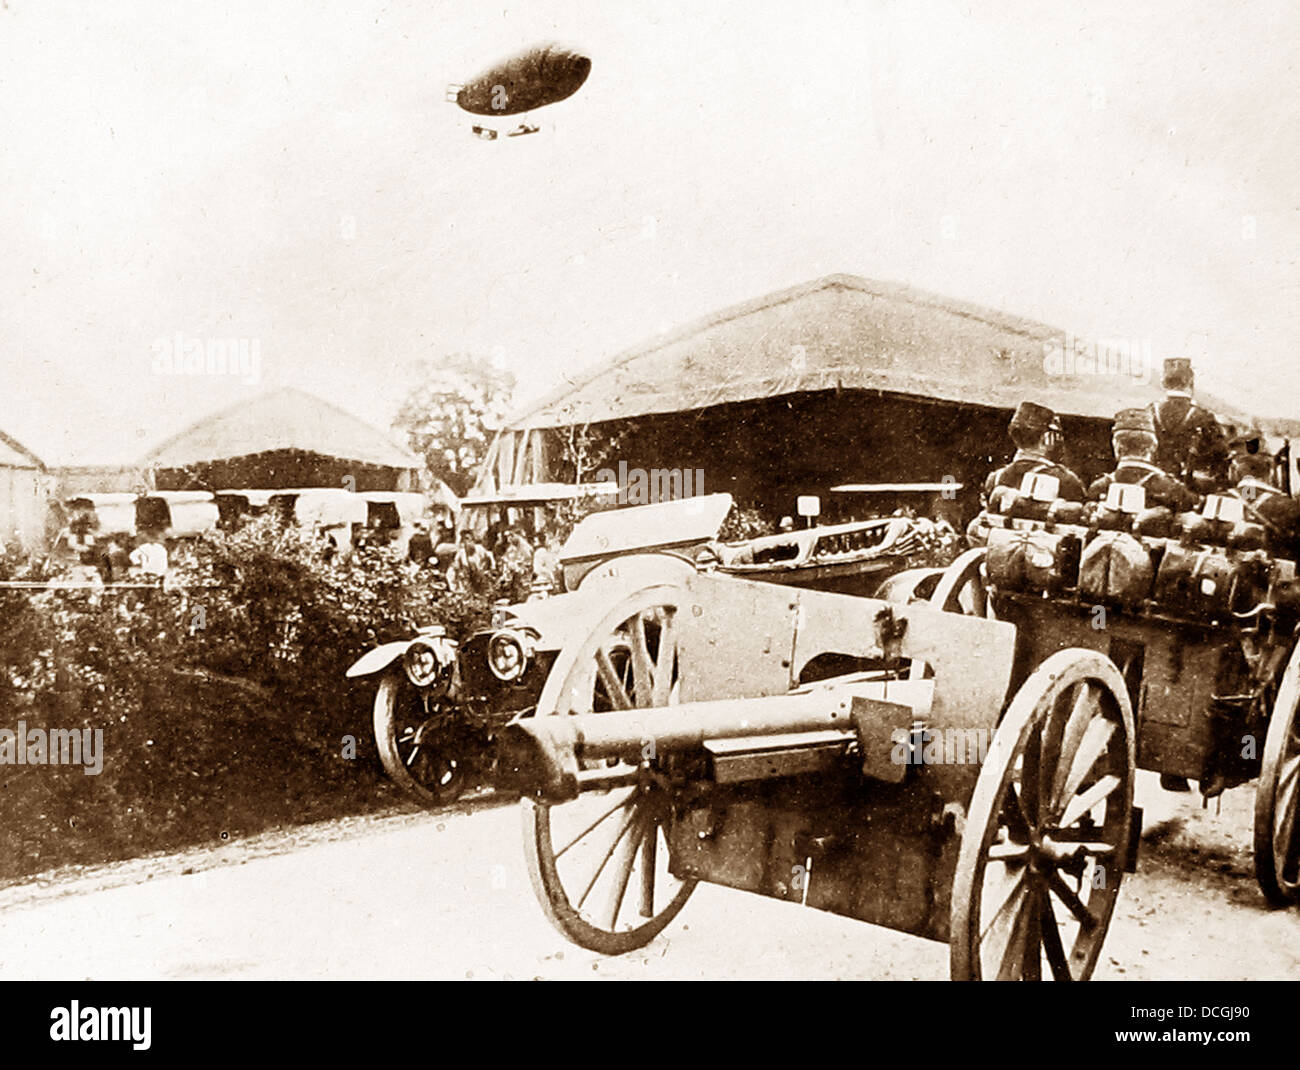 Airship sur une colonne d'artillerie française pendant la PREMIÈRE GUERRE MONDIALE Banque D'Images